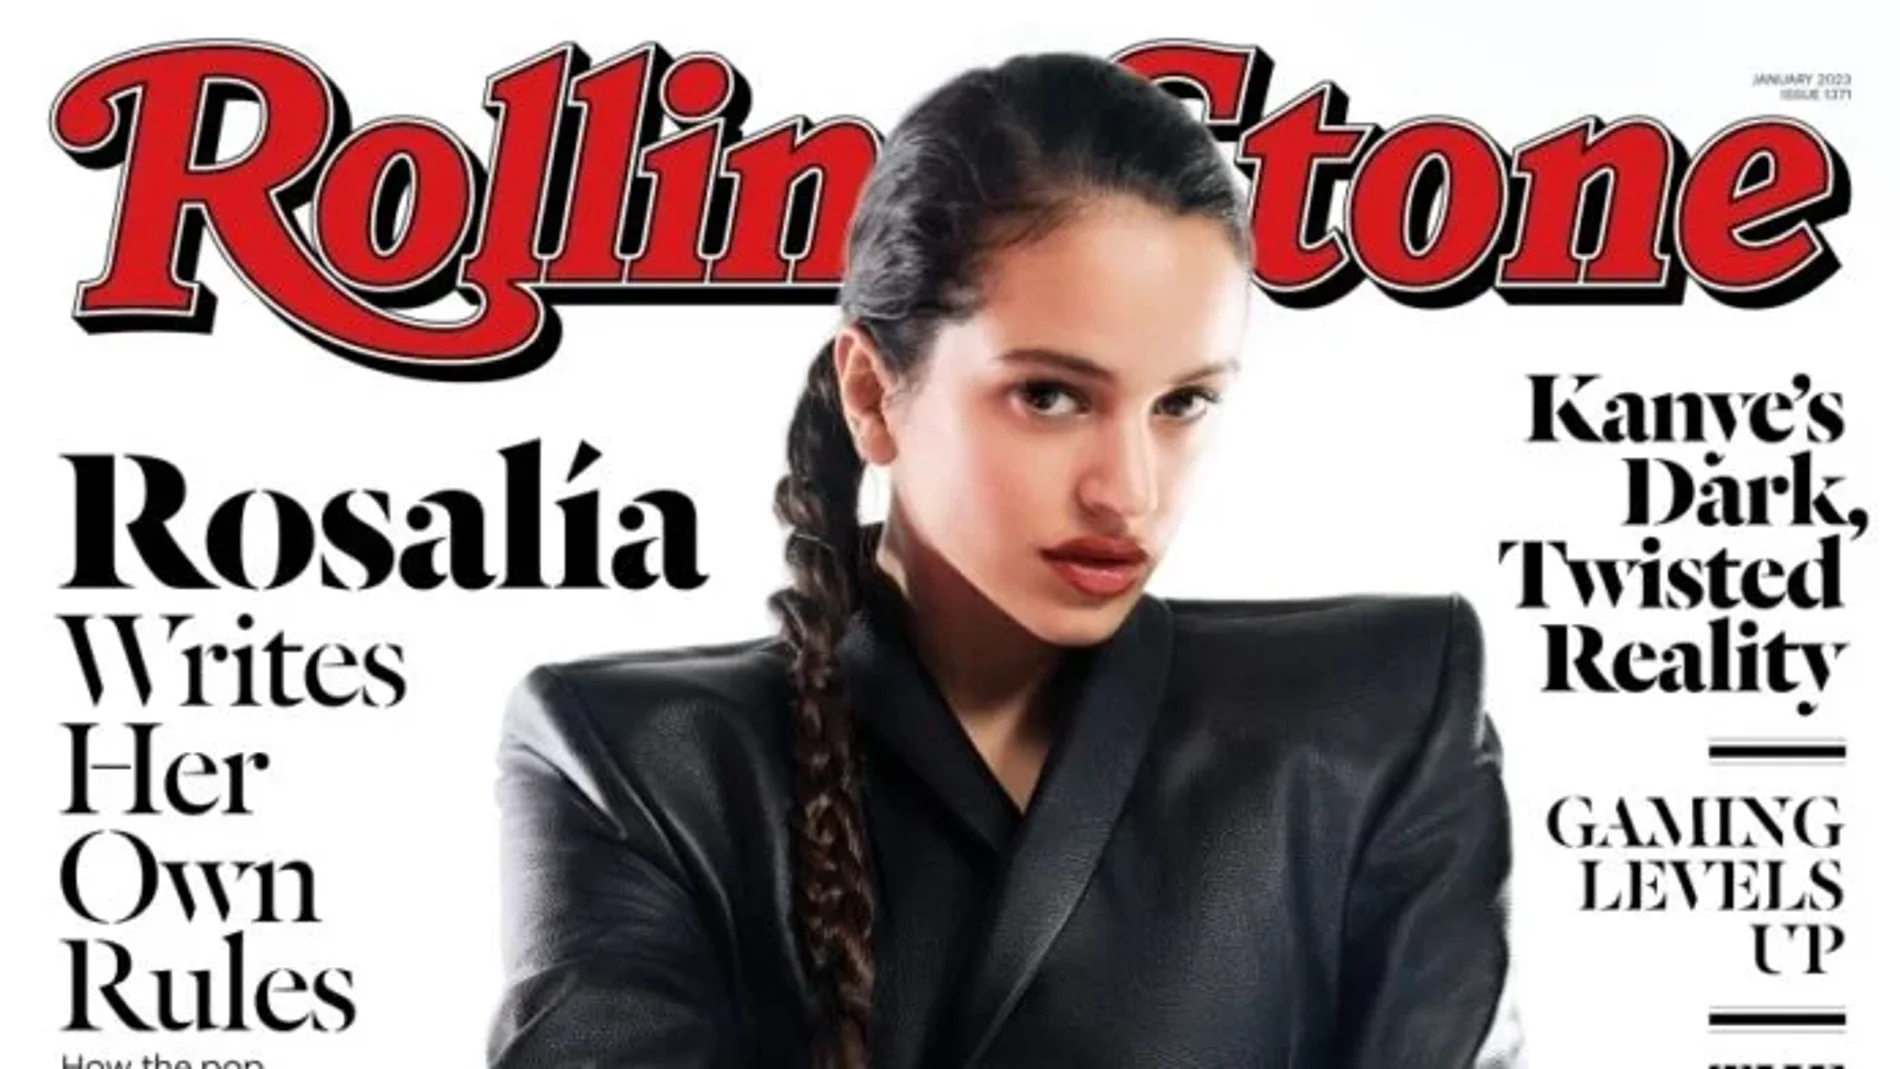 La portada de "Rolling Stone" con Rosalía